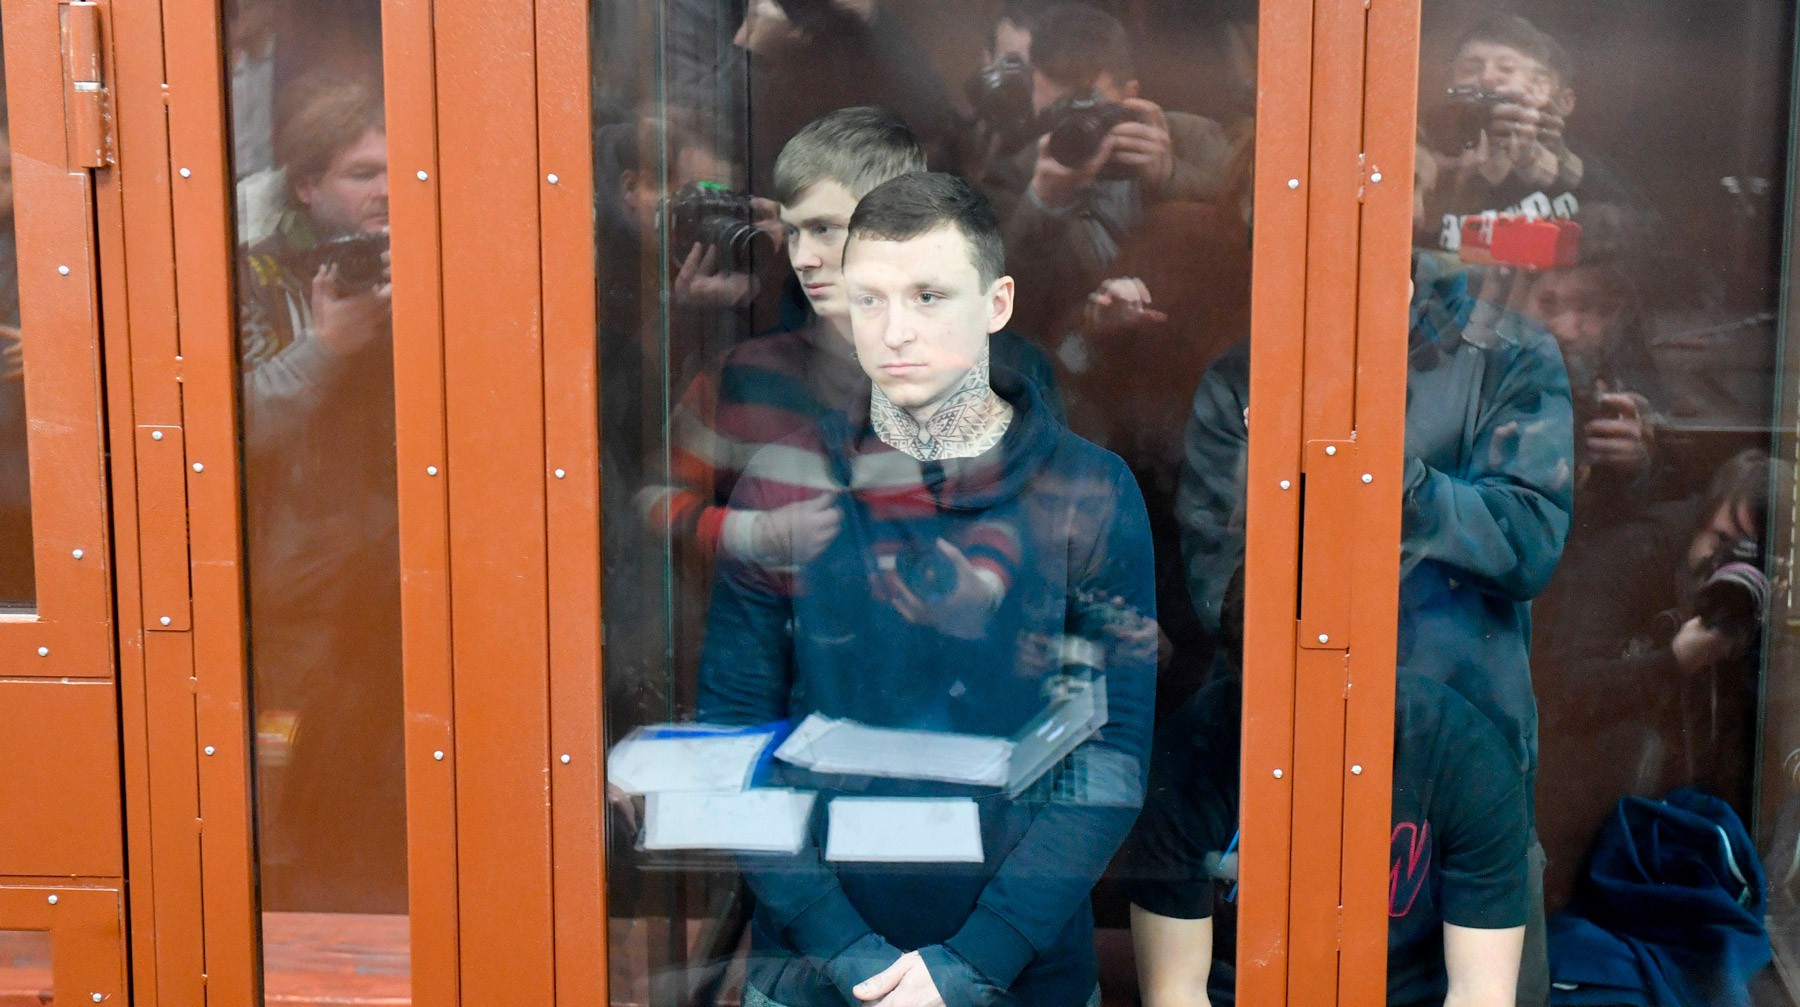 Dailystorm - Мамаев и Кокорин остаются в «Бутырке» на два месяца